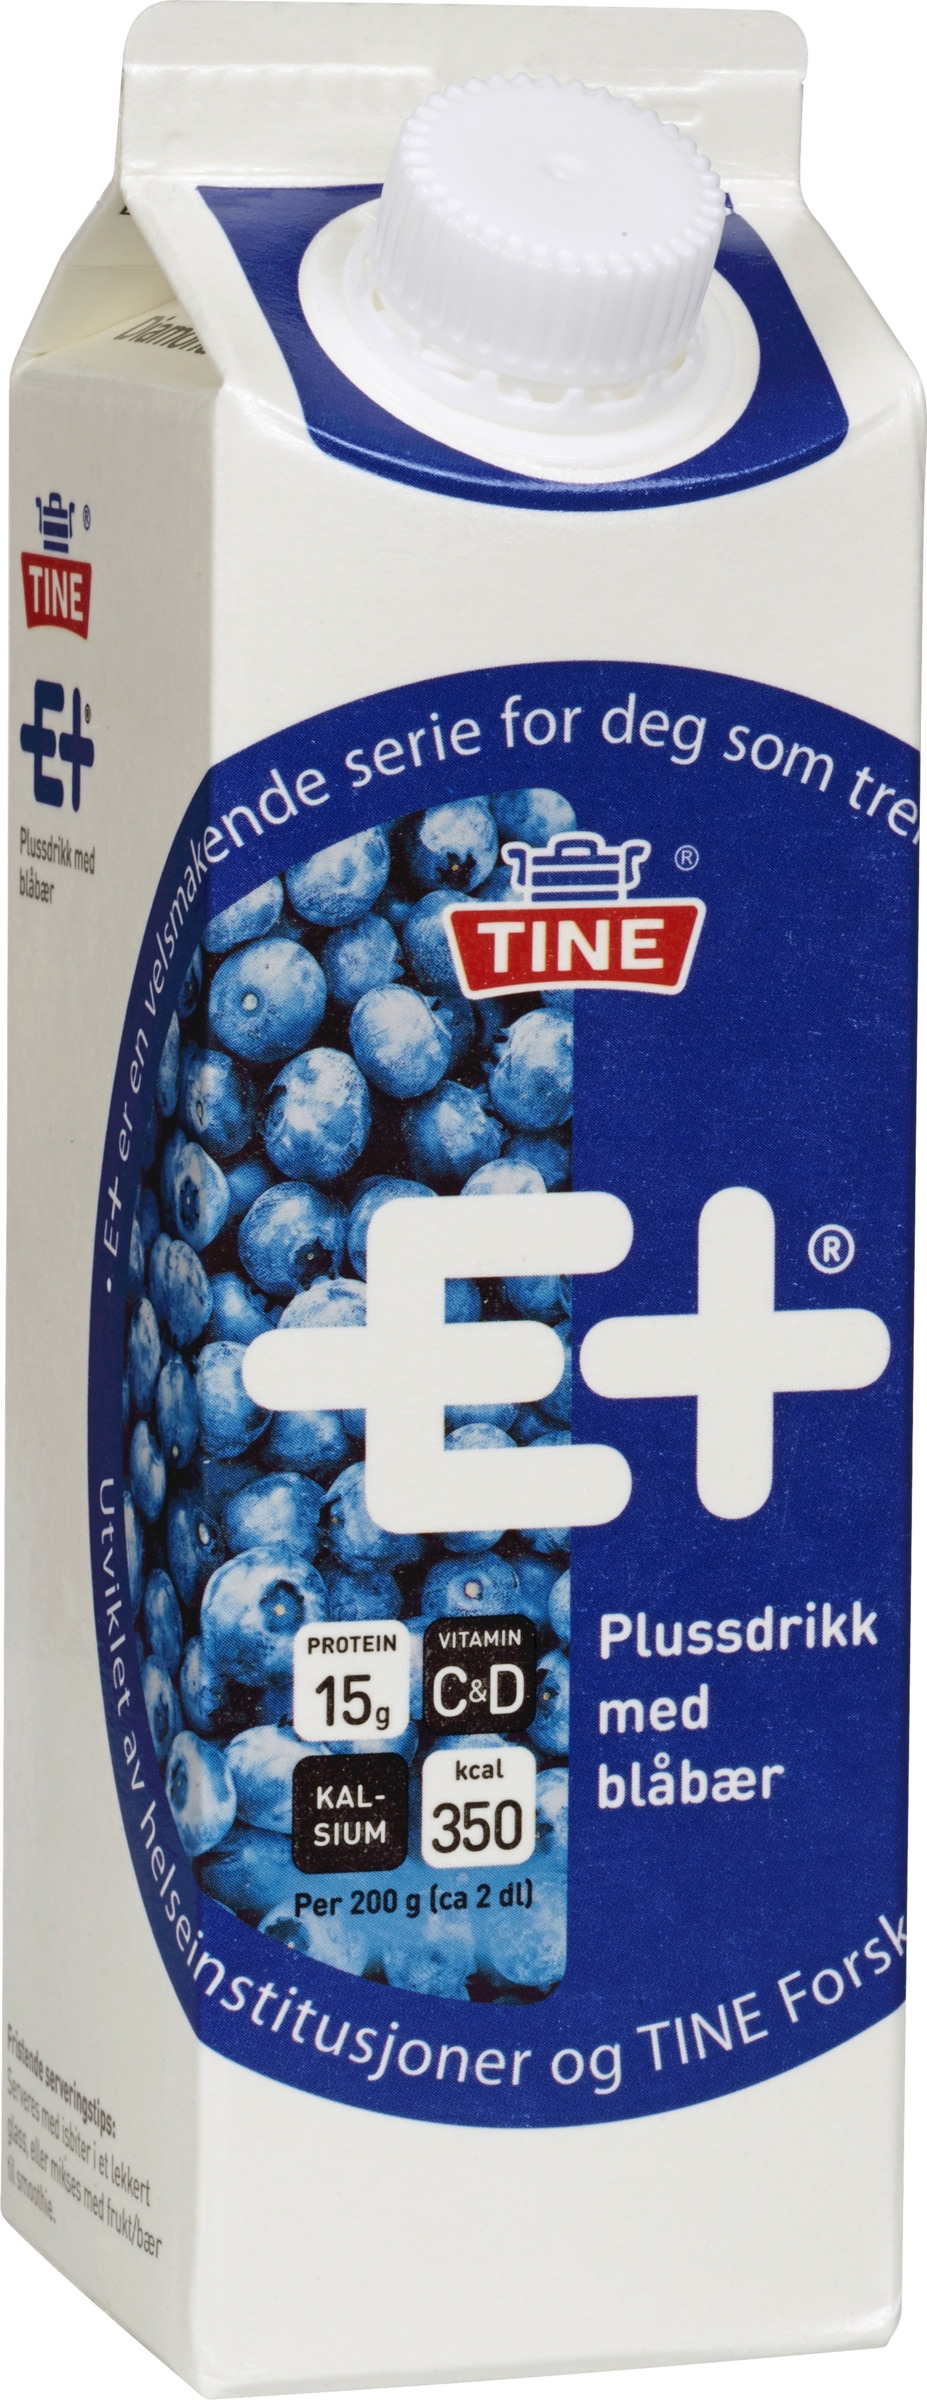 E+plussdrikk blåbær   0,5l